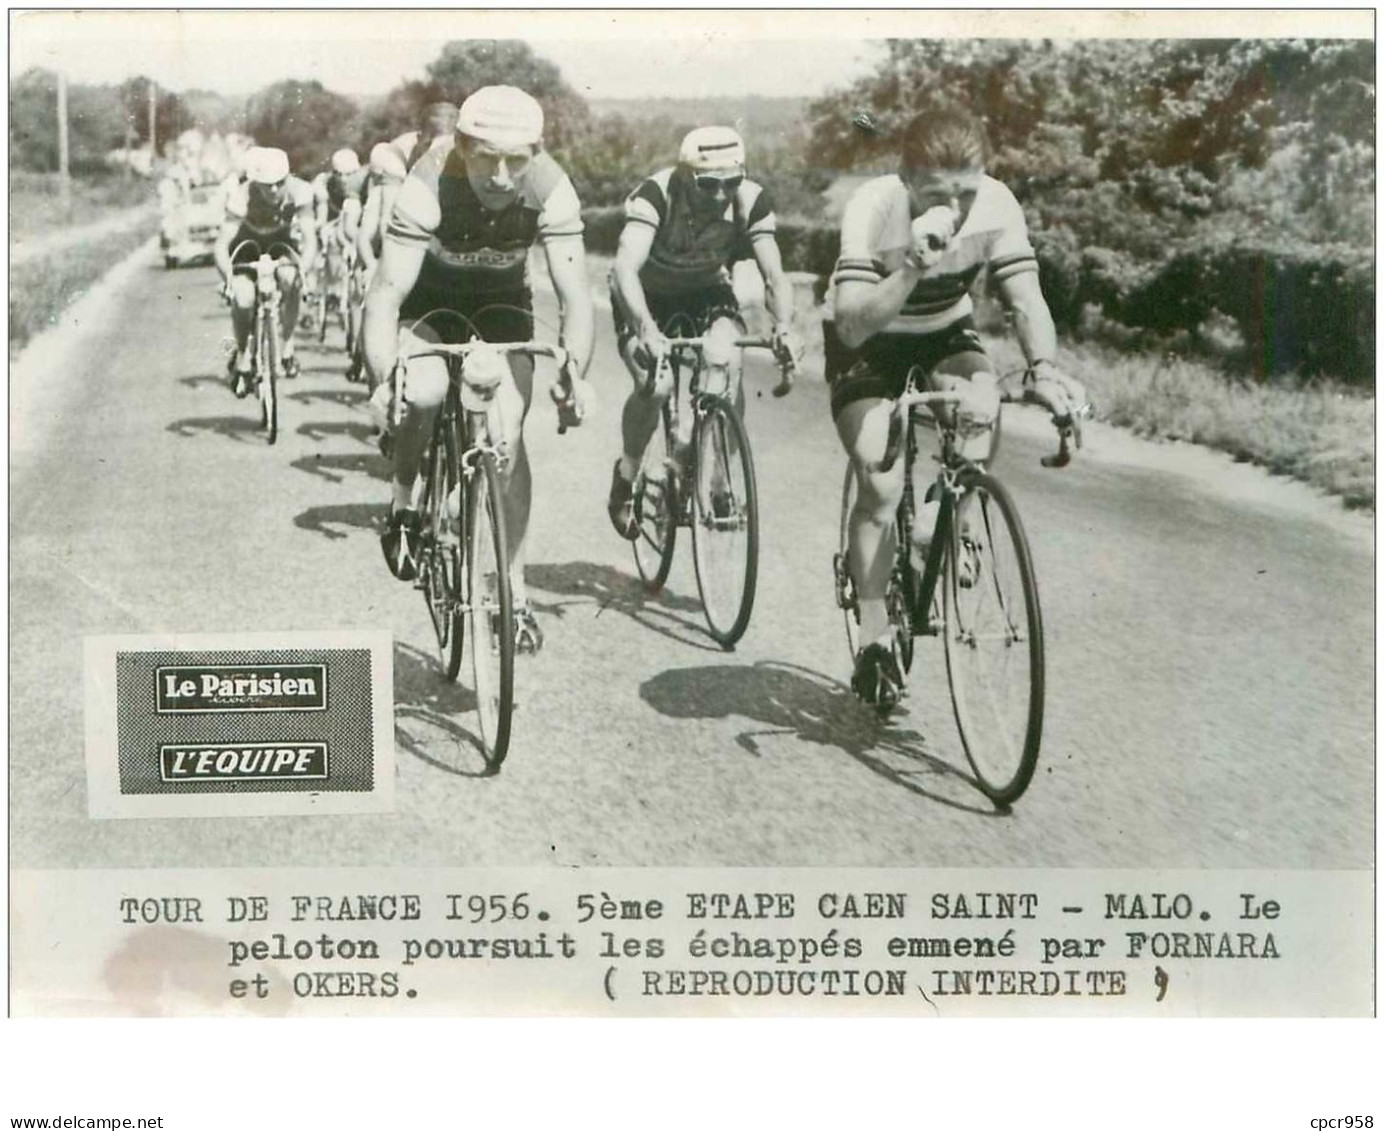 PHOTO DE PRESSE ORIGINALE TOUR DE FRANCE 1956.20X15.5eme ETAPE CAEN ST MALO.LE PELOTON ...FORNARA ET OKERS.n°18662 - Radsport